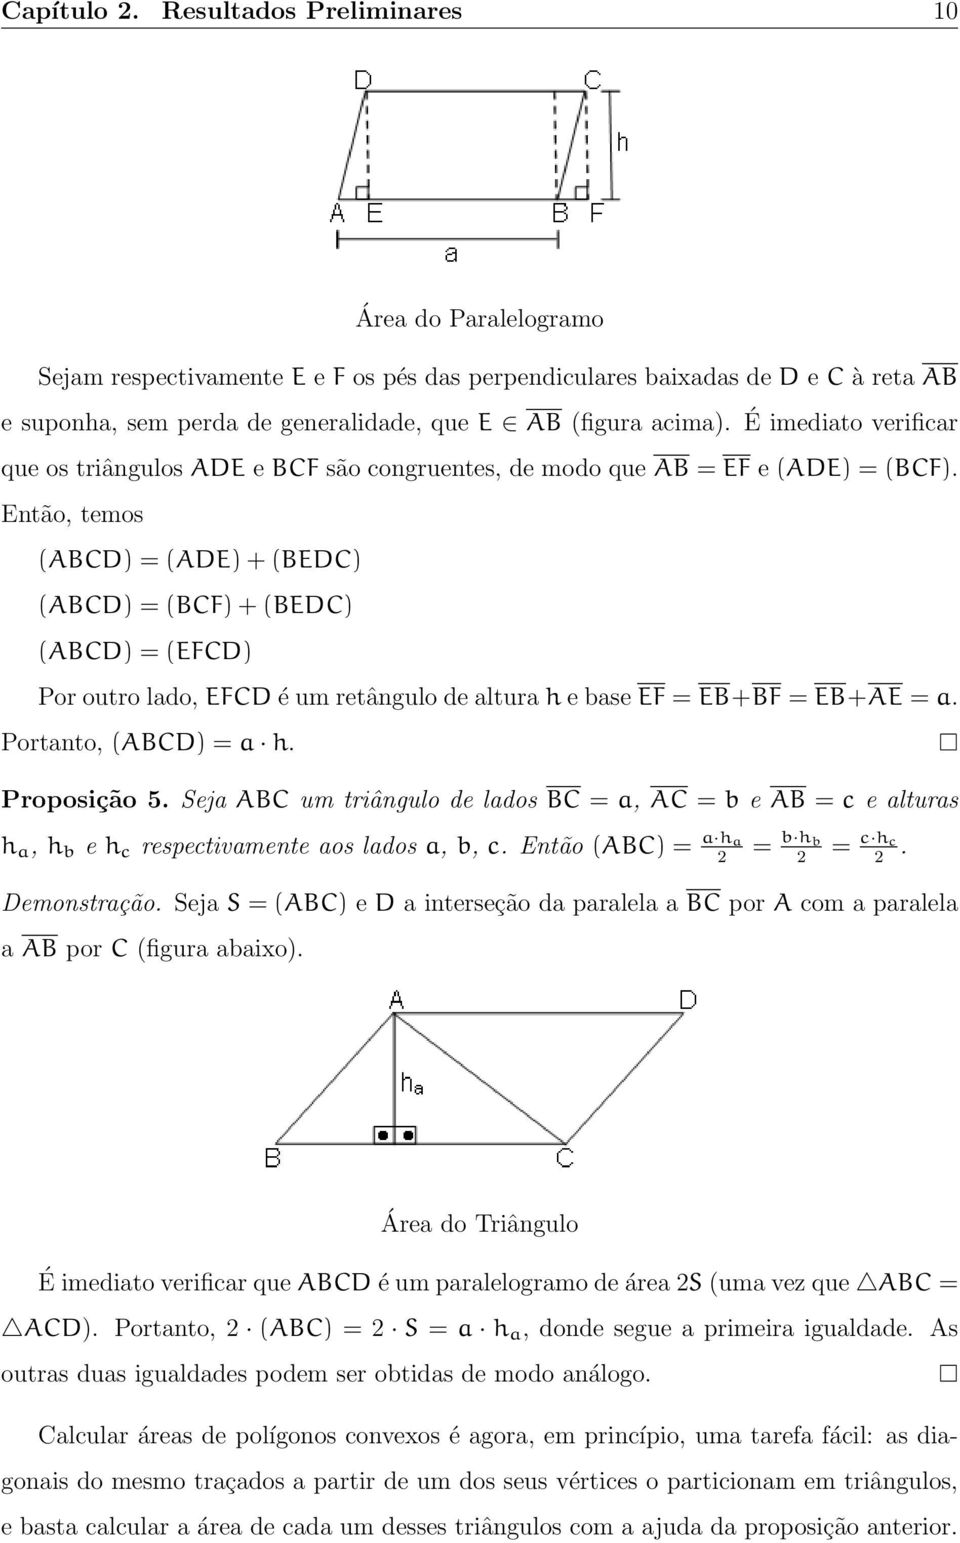 É imediato verificar que os triângulos ADE e BCF são congruentes, de modo que AB = EF e (ADE) = (BCF).